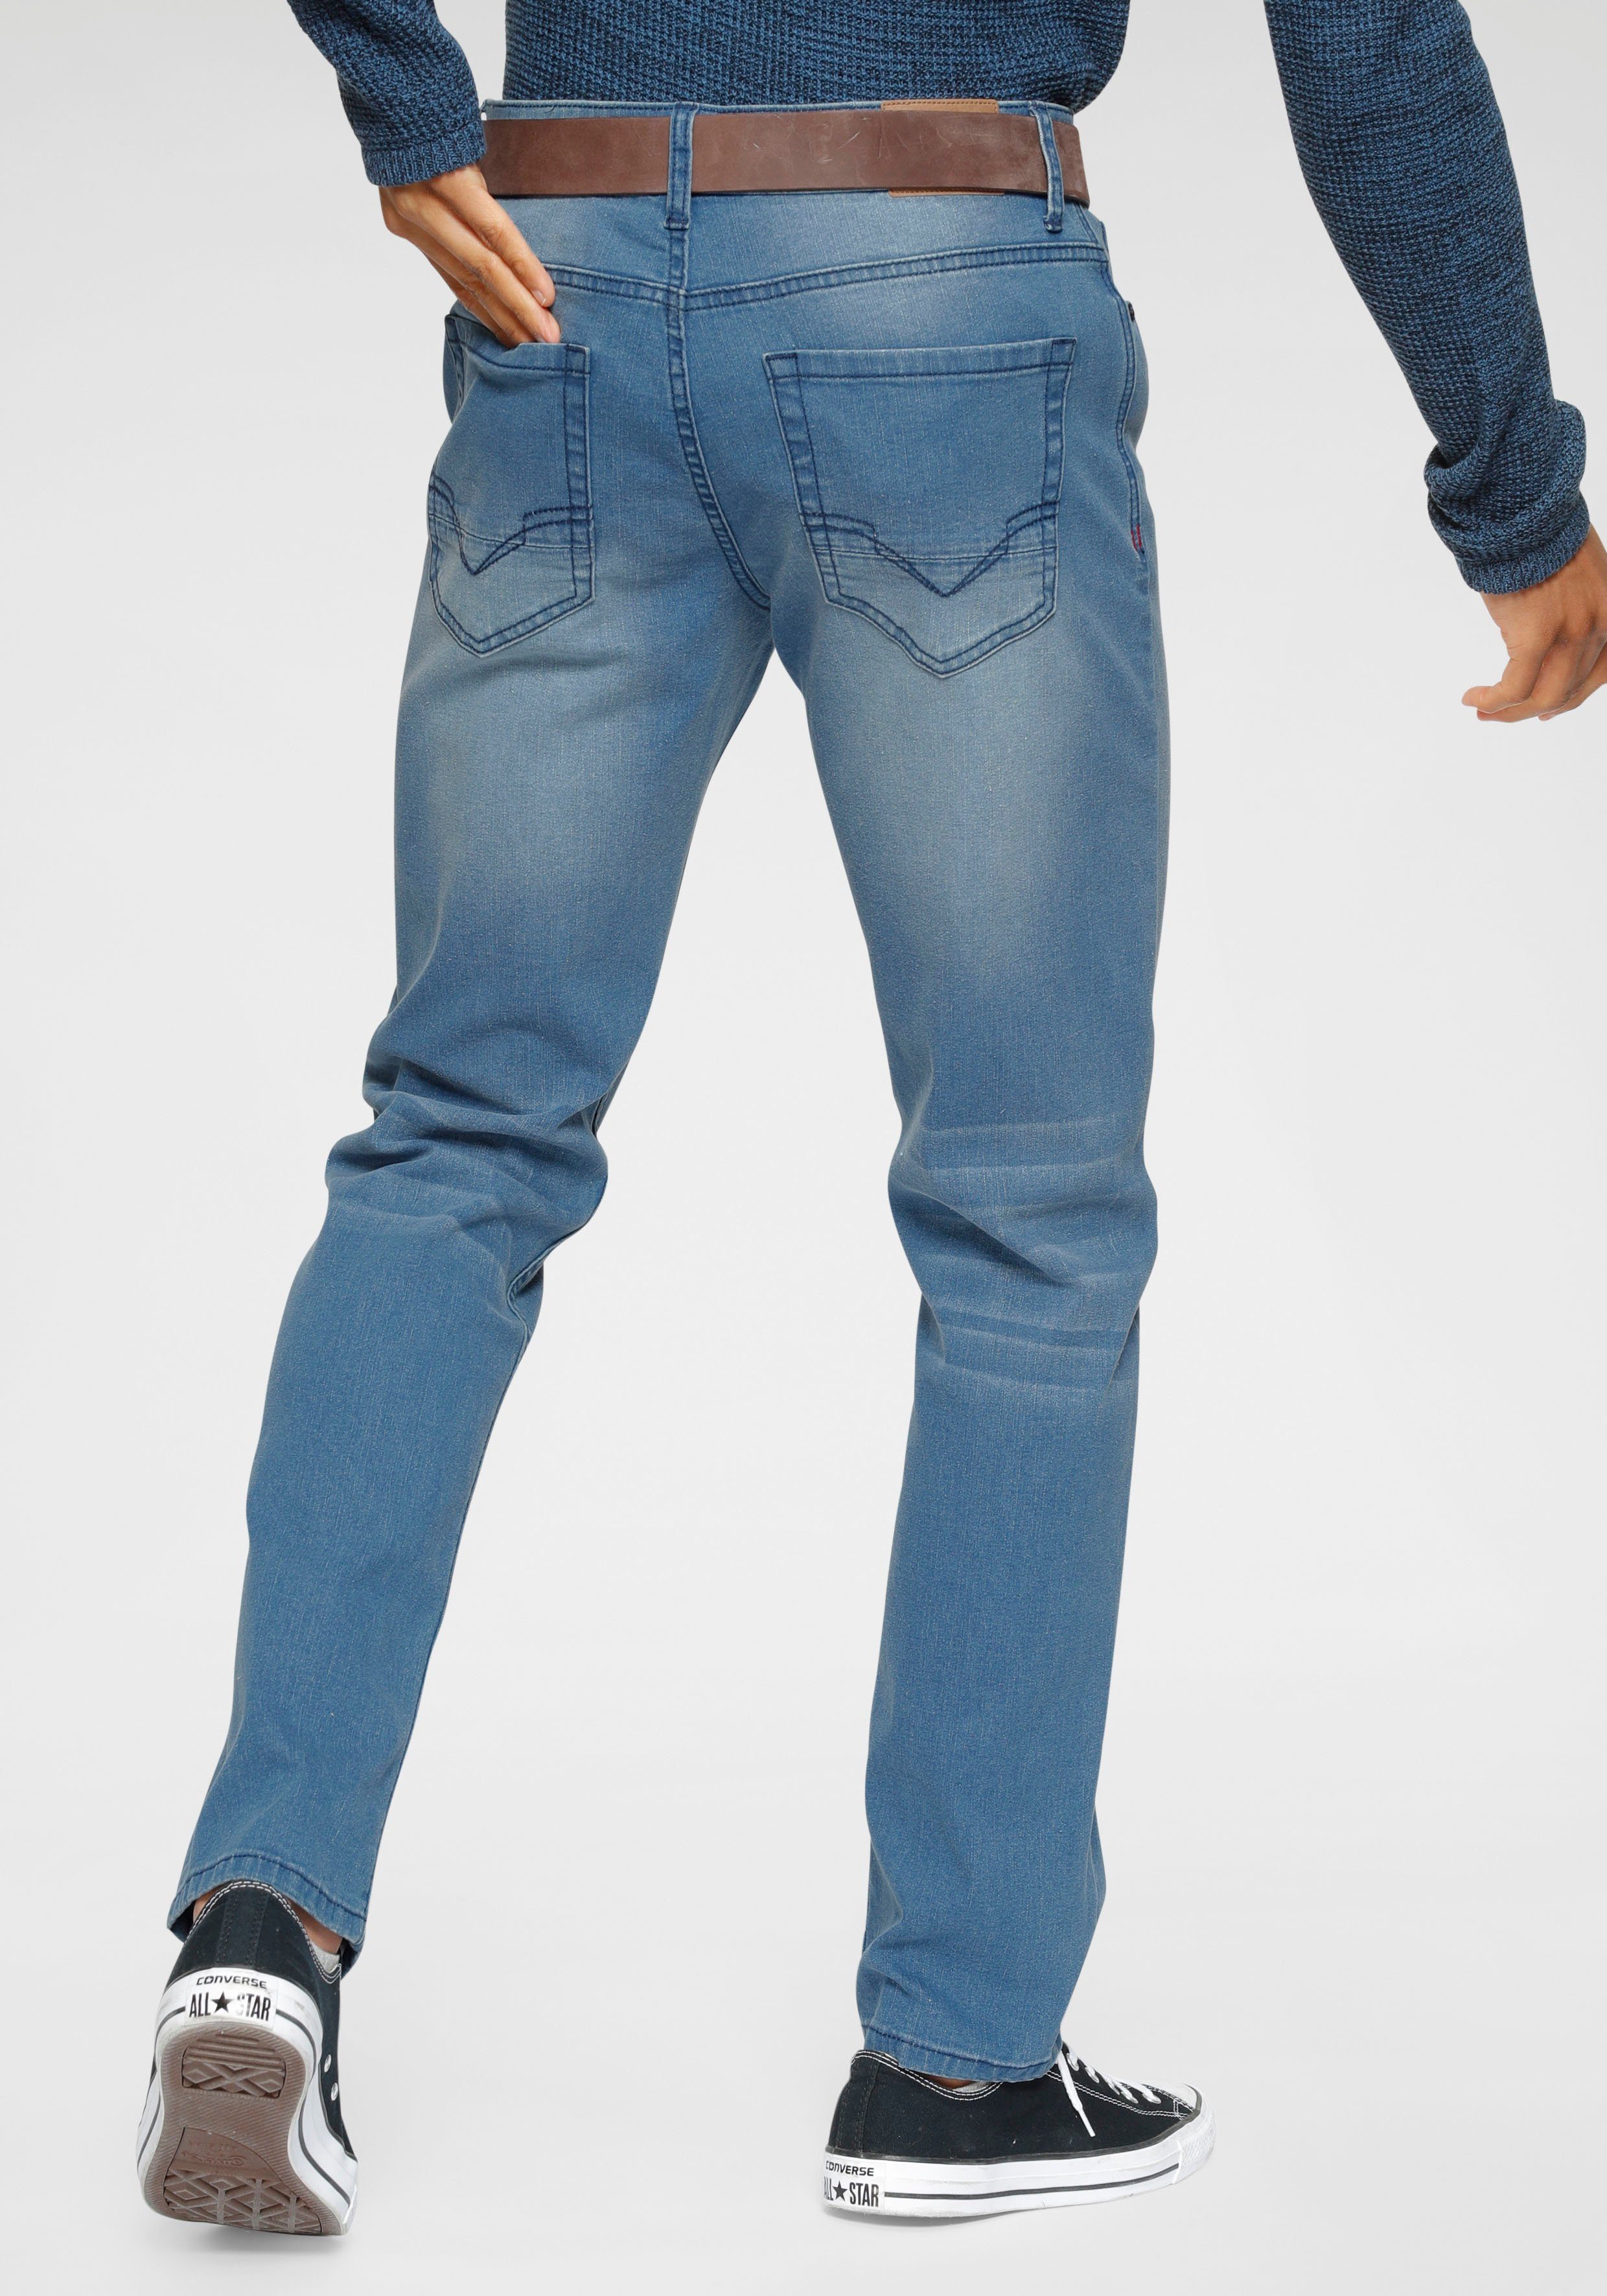 H.I.S Slim-fit-Jeans FLUSH Ökologische, Wash wassersparende Produktion Ozon durch